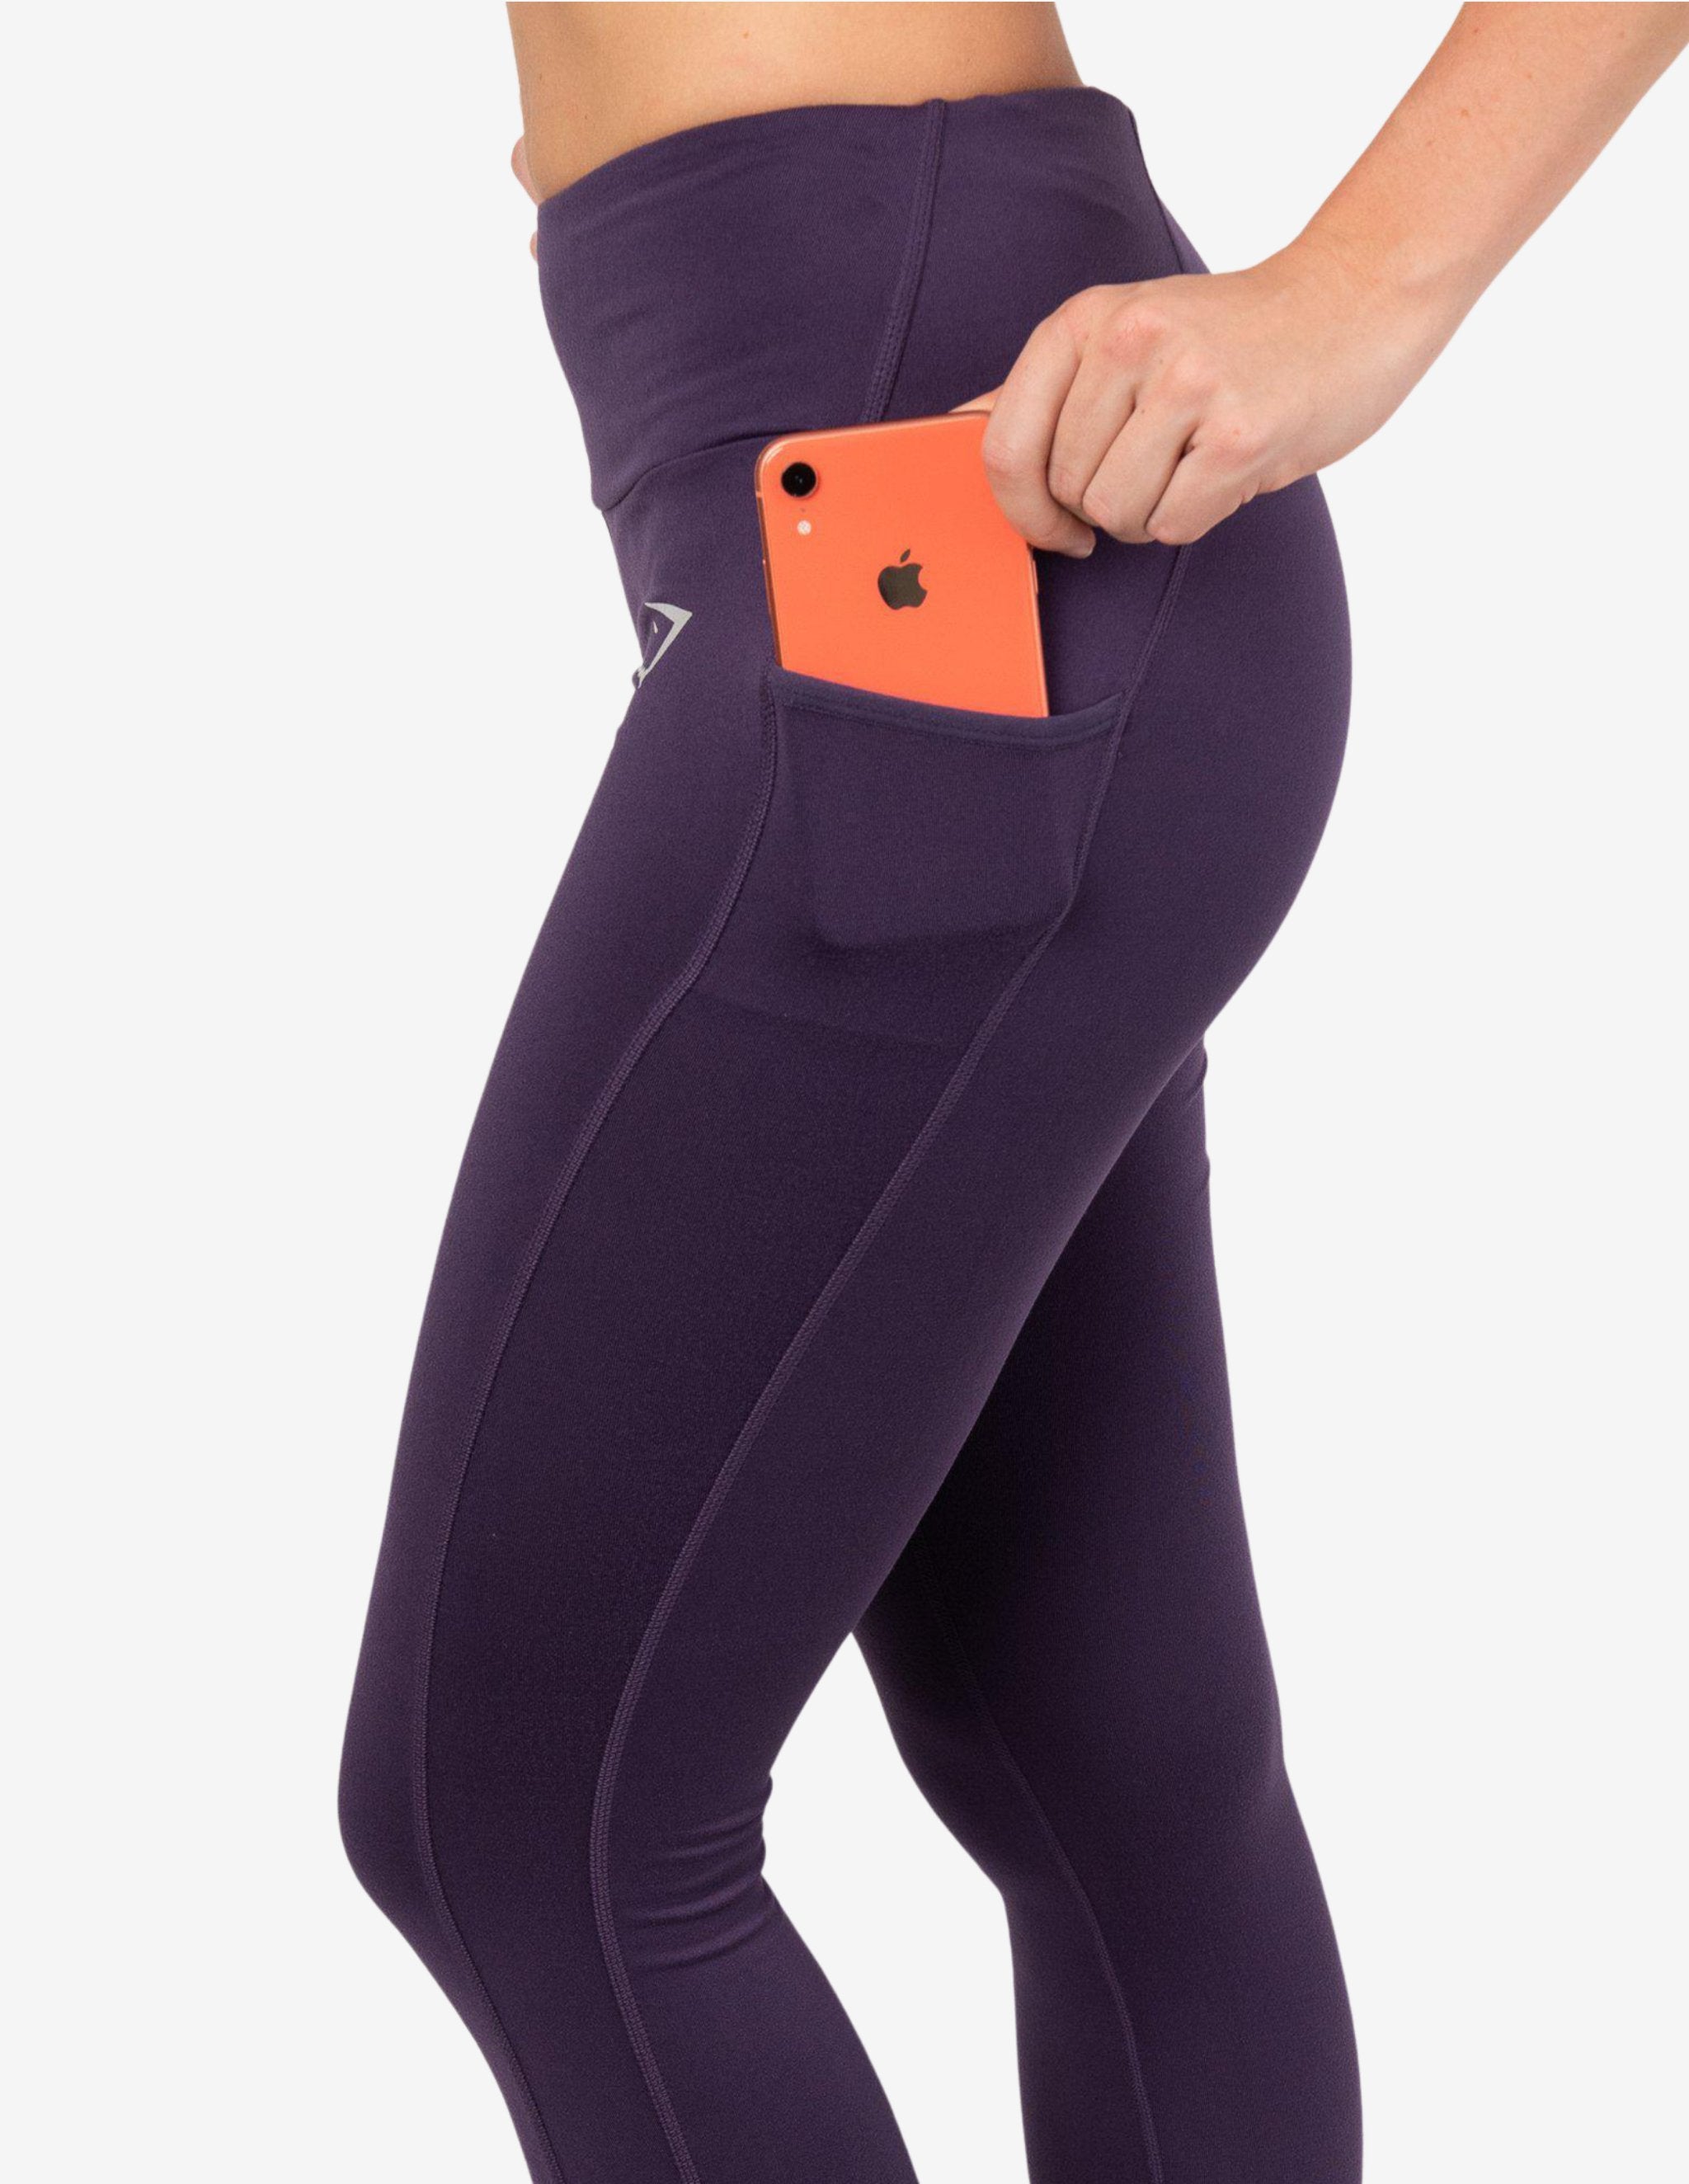 Buy Lavender Leggings for Women by Teamspirit Online